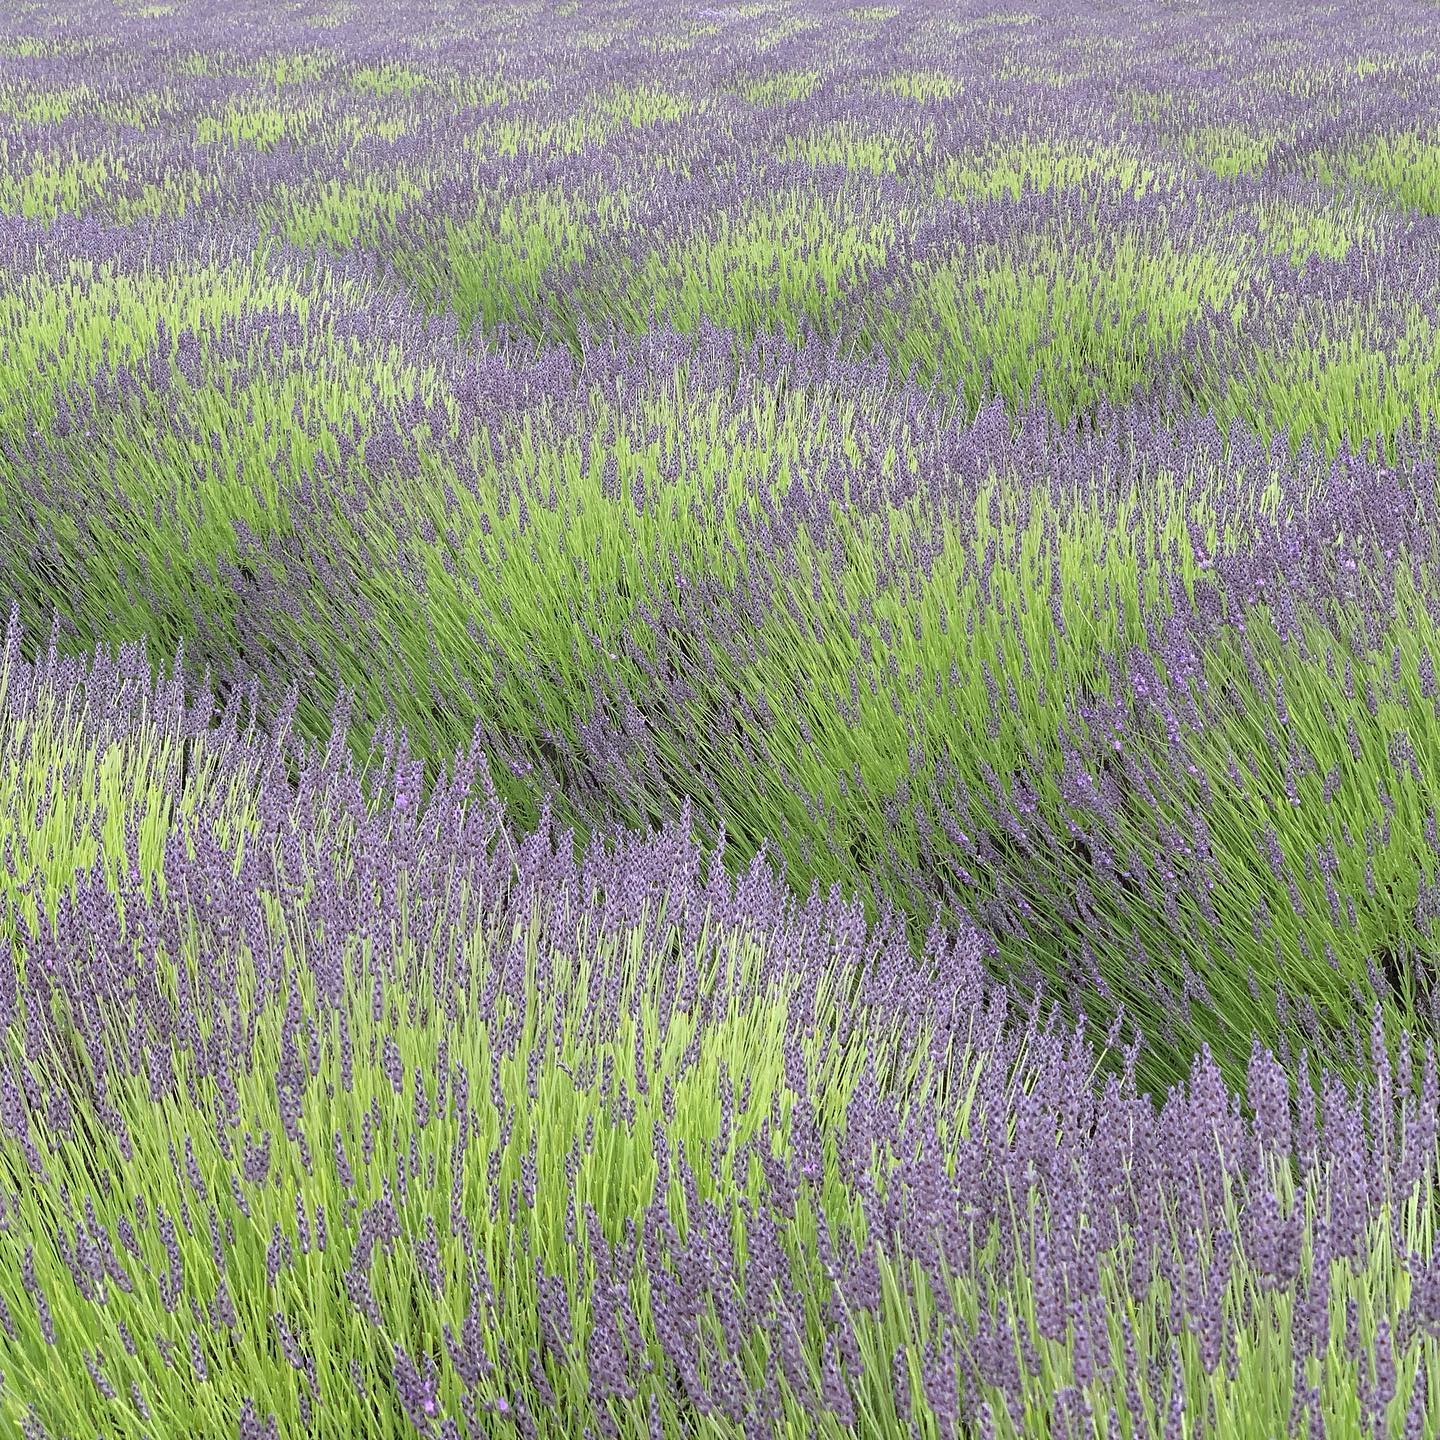 Lavender fields in Sequim, WA